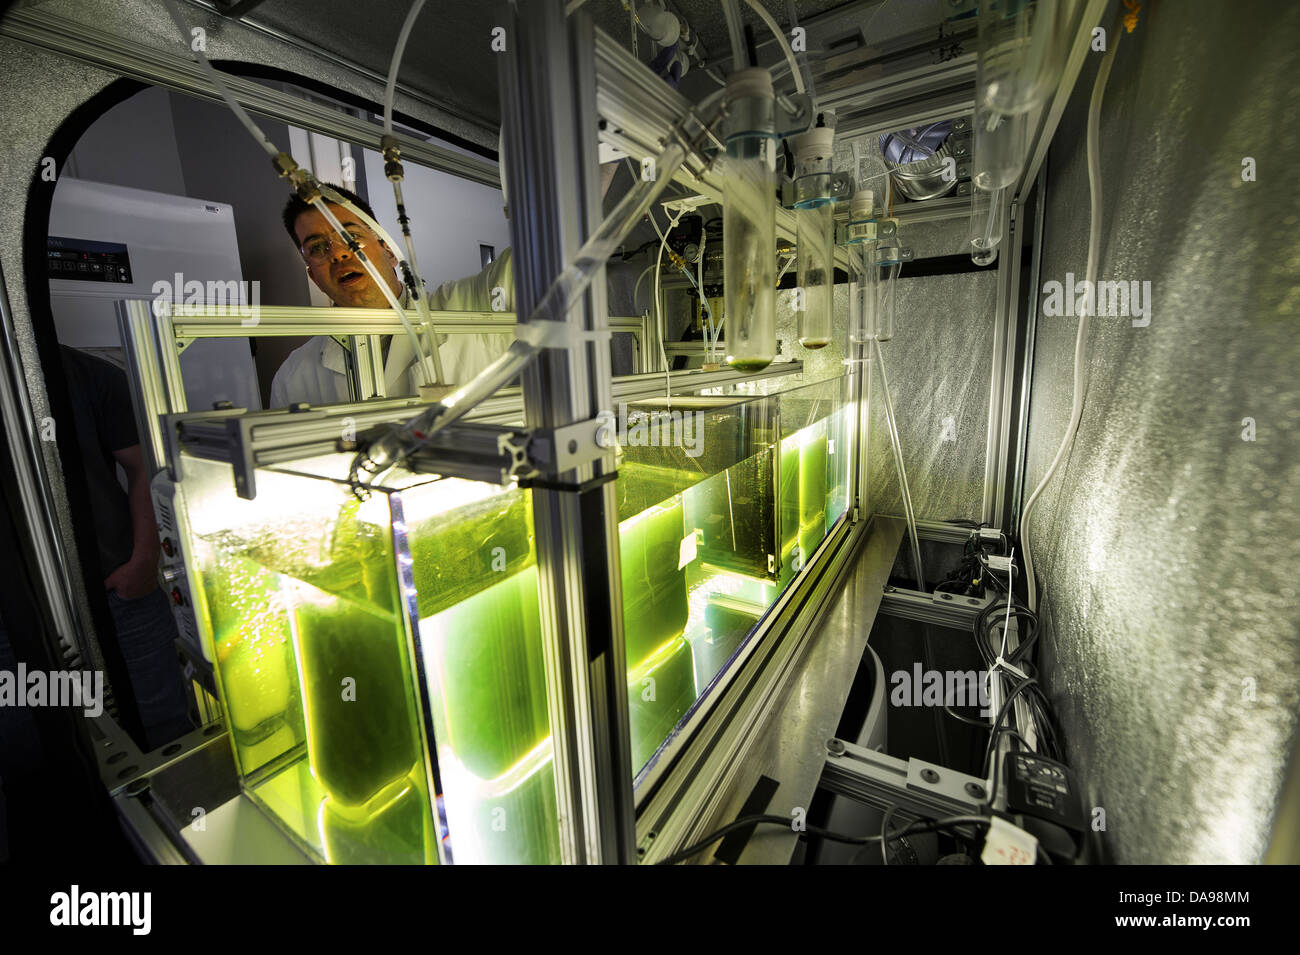 Forscher Nick Sweeney funktioniert Algen Stämme für den Einsatz als erneuerbarer Brennstoff am National Renewable Energy Laboratory 26. April 2013 in Golden, Colorado entwickelt. Stockfoto